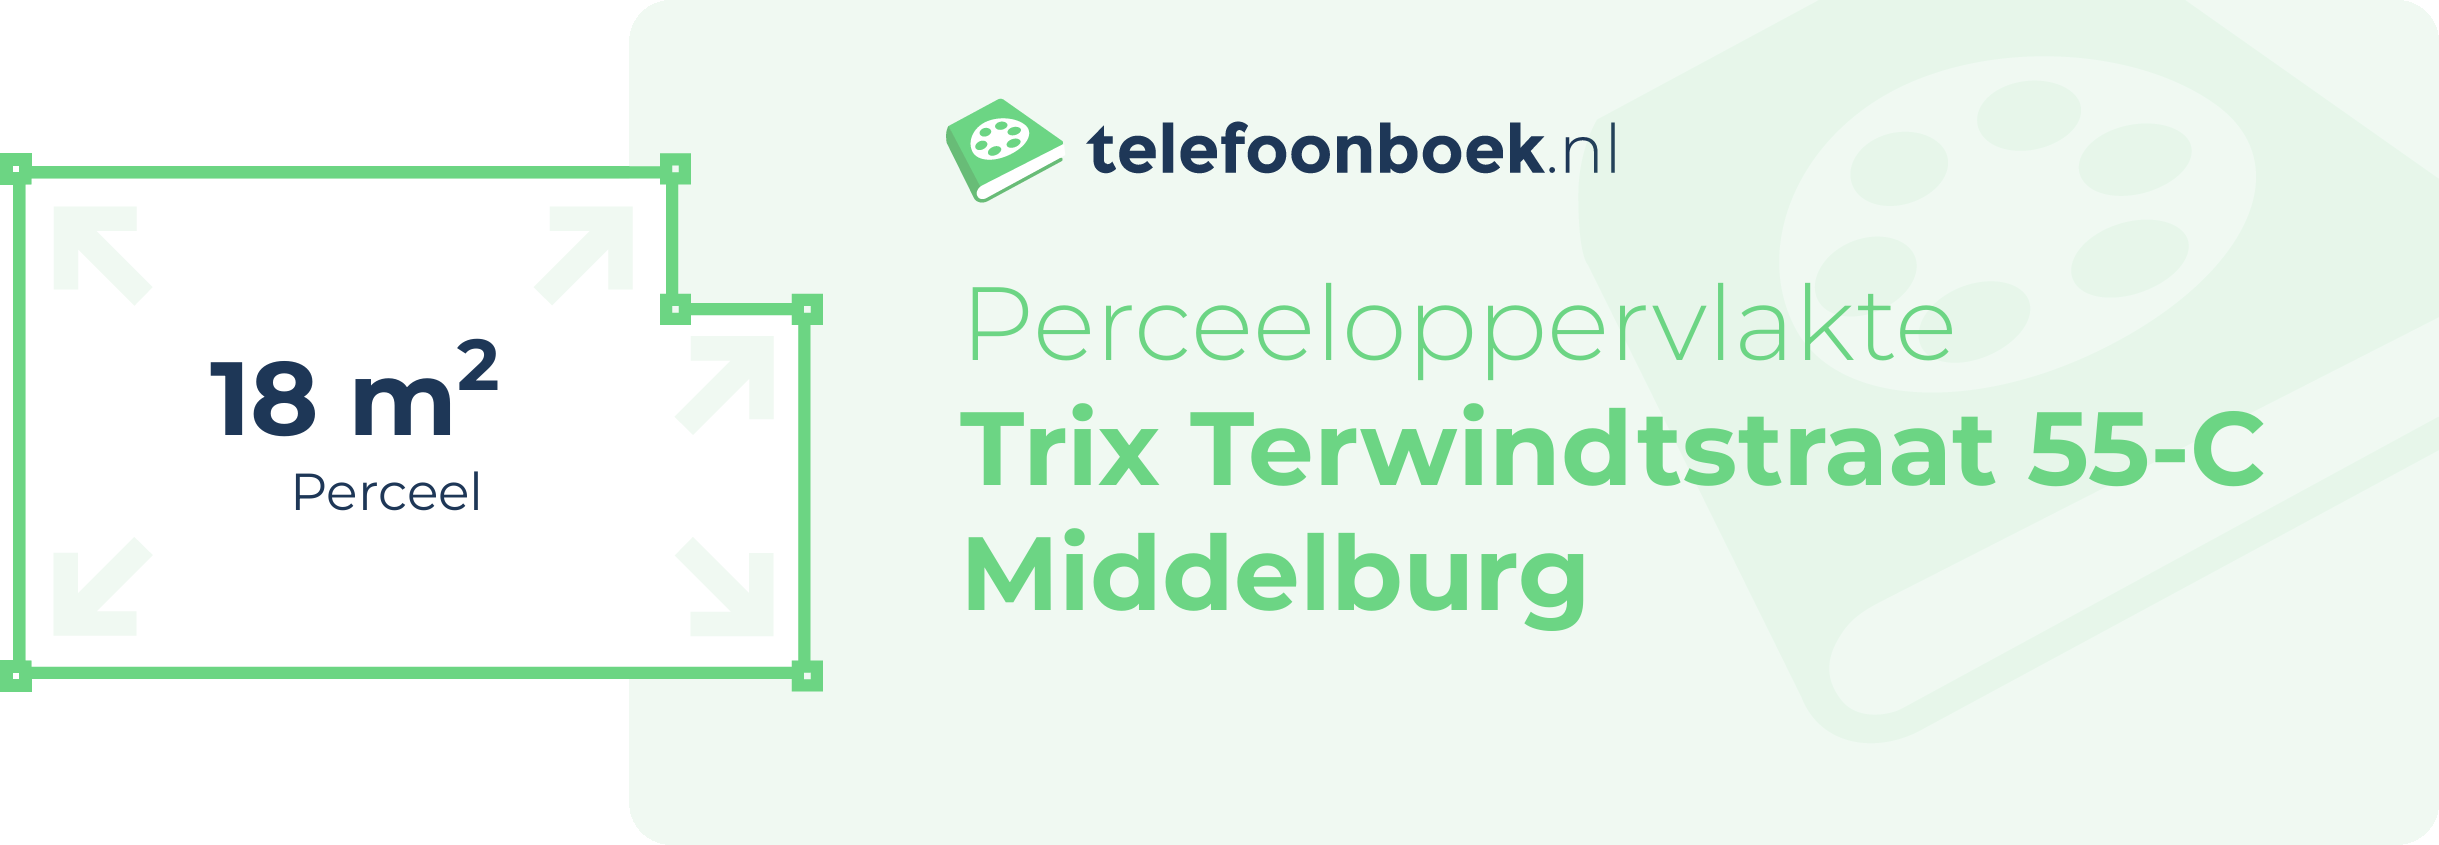 Perceeloppervlakte Trix Terwindtstraat 55-C Middelburg